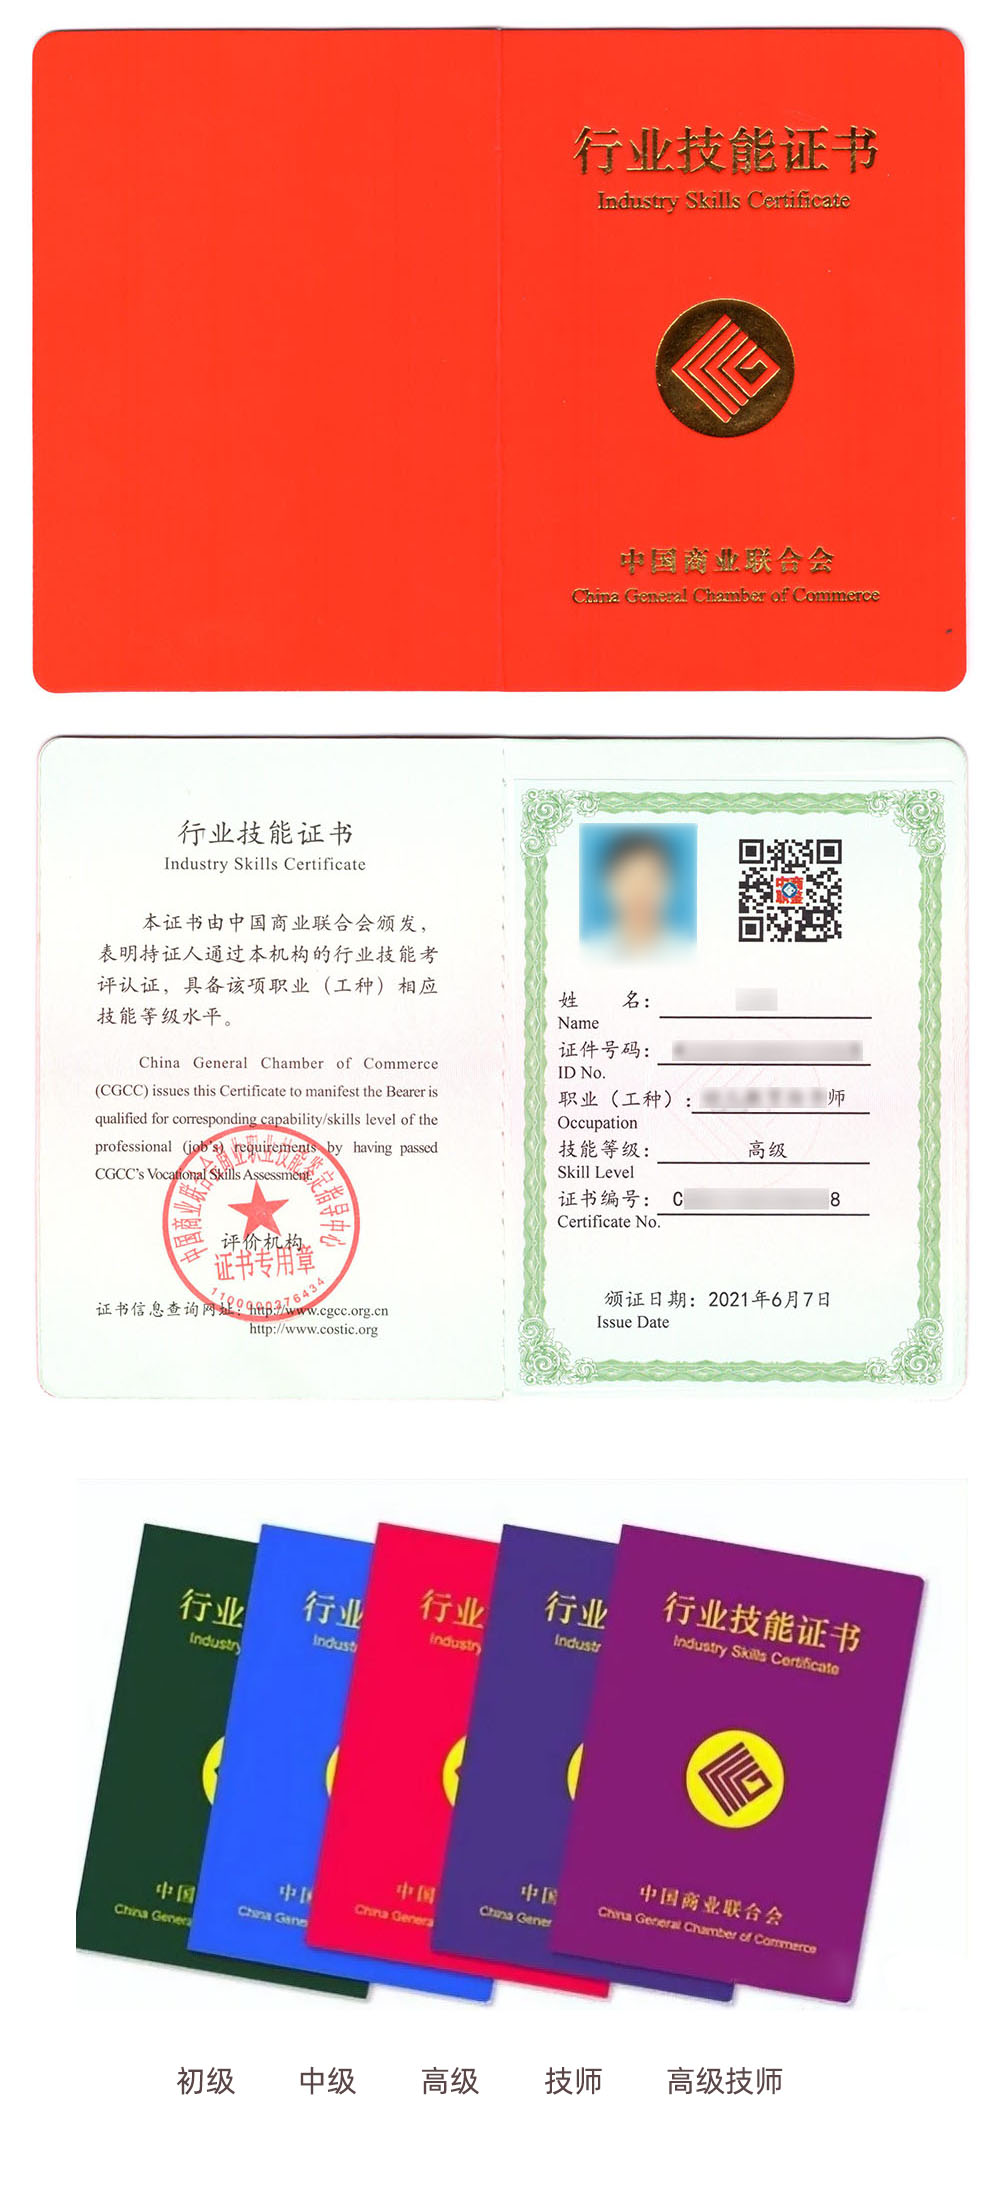 中国商业联合会商业职业技能鉴定中心 行业技能证书 房地产经纪人证证书样本